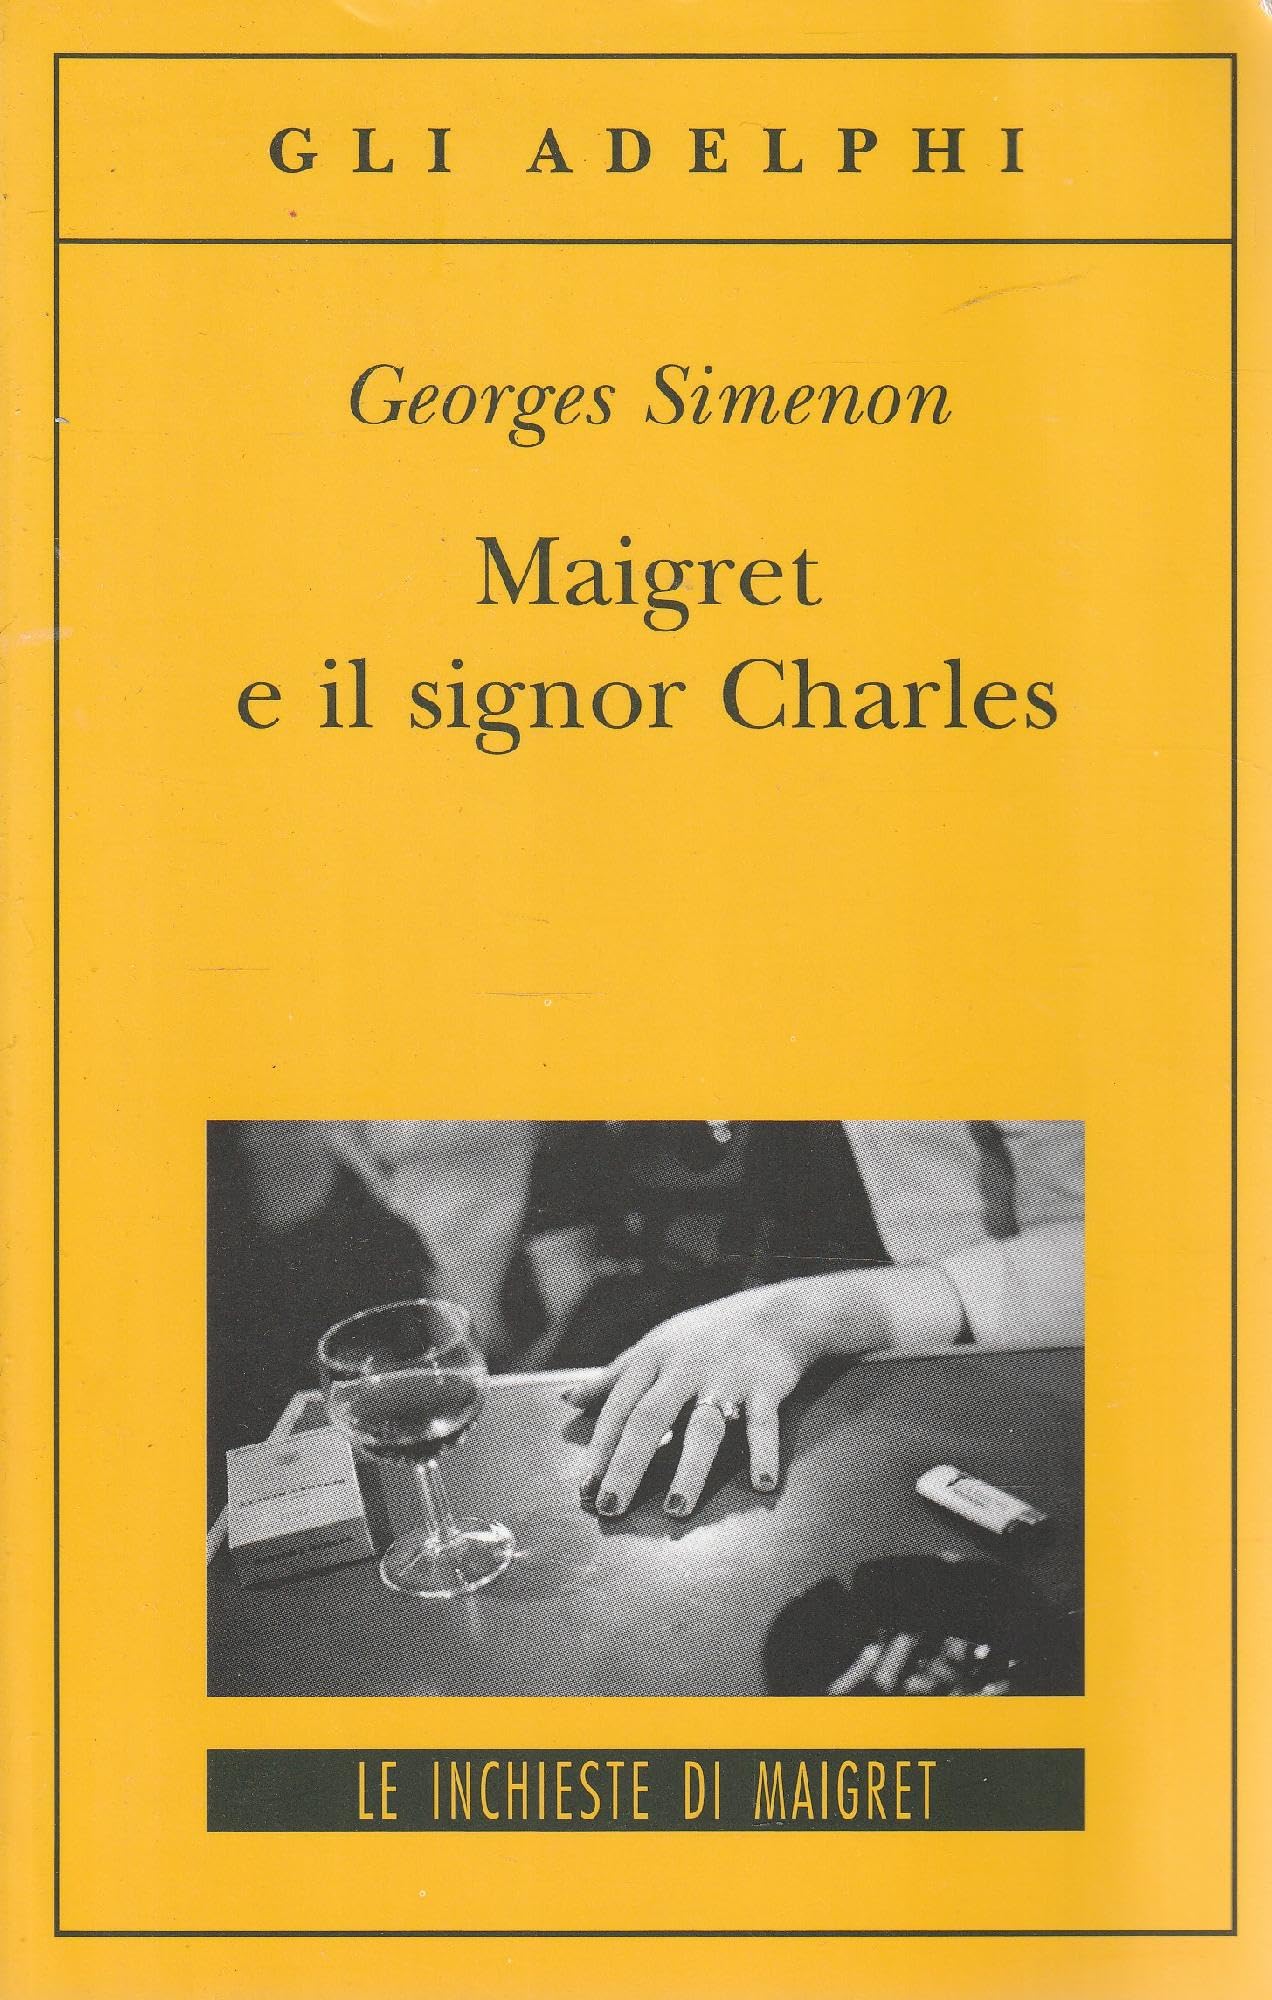 Maigret e il signor Charles - Georges Simenon - Recensione libro